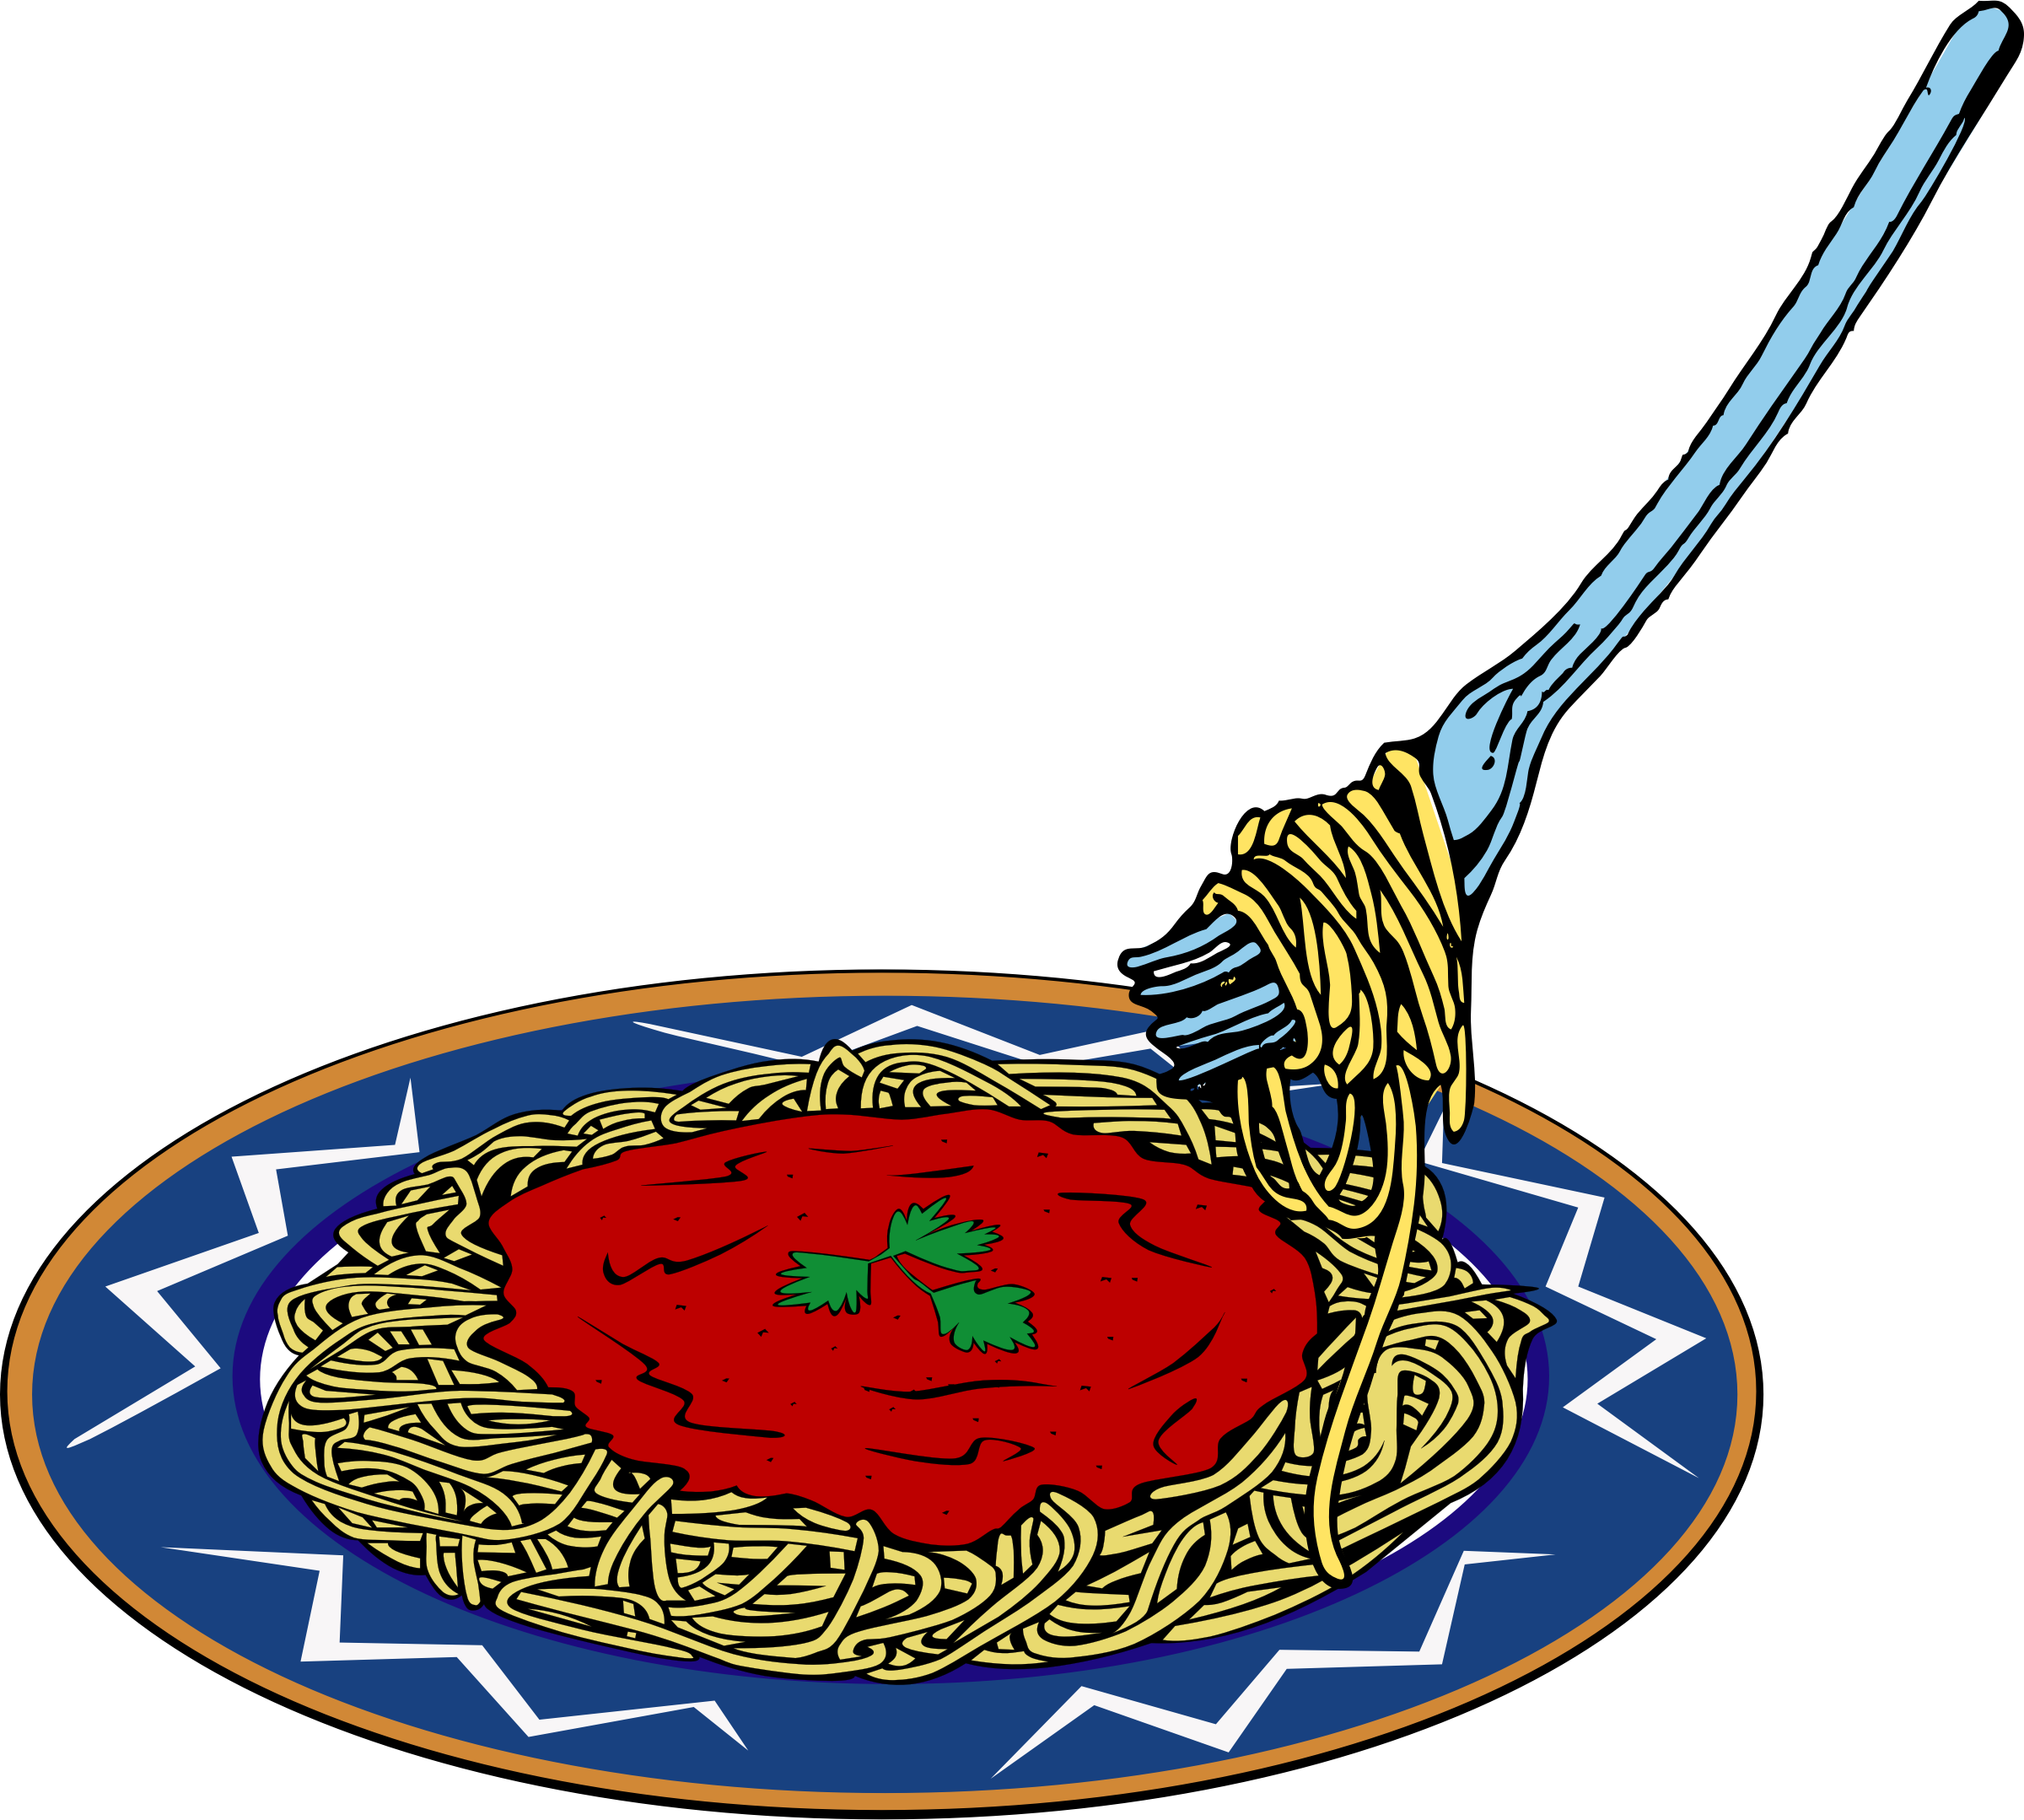 Spaghetti Clip Art - Tumundografico